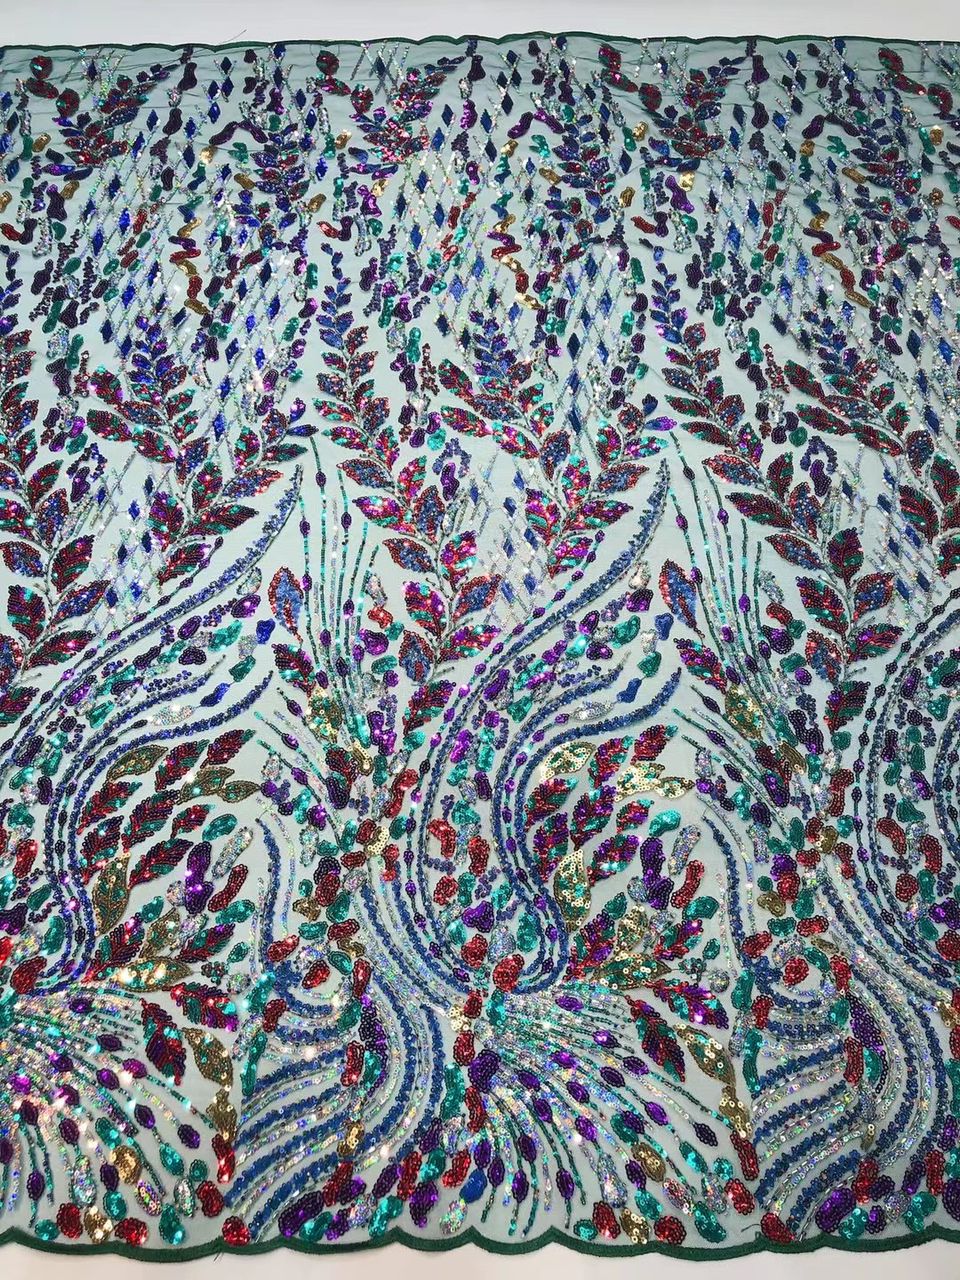 Dazzle Sequin Fabric